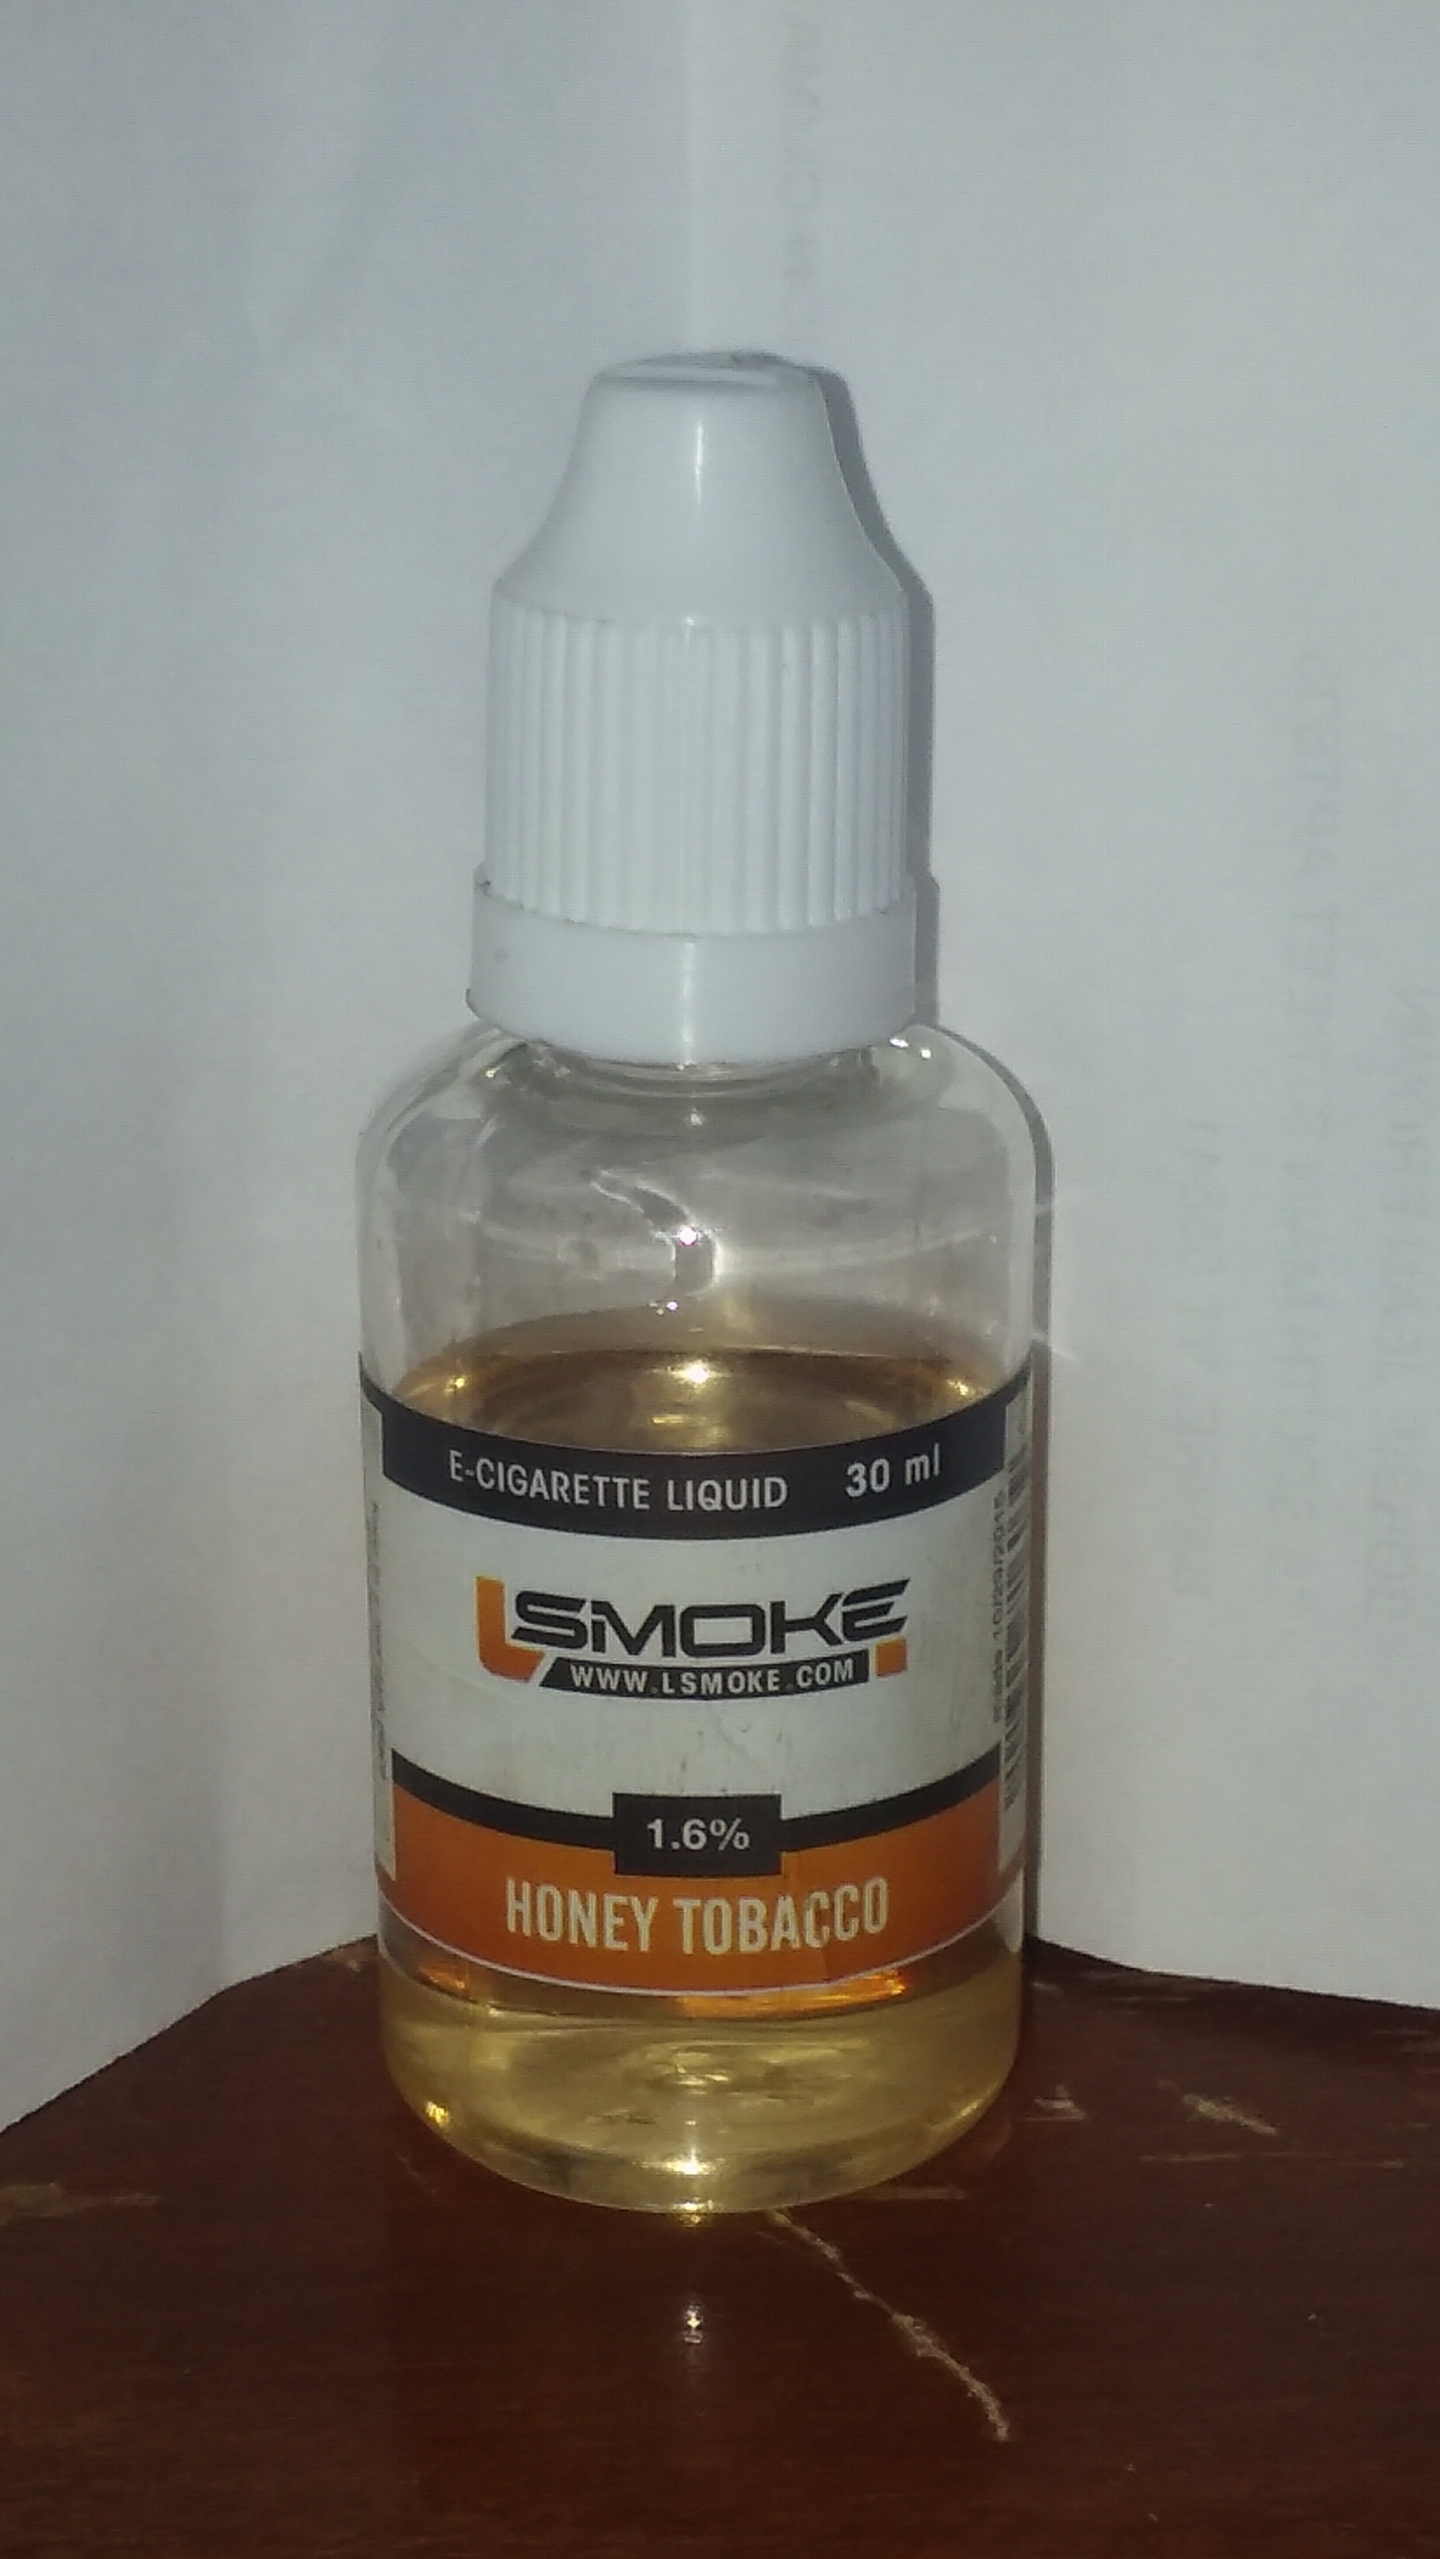 Lsmoke Honey tobacco